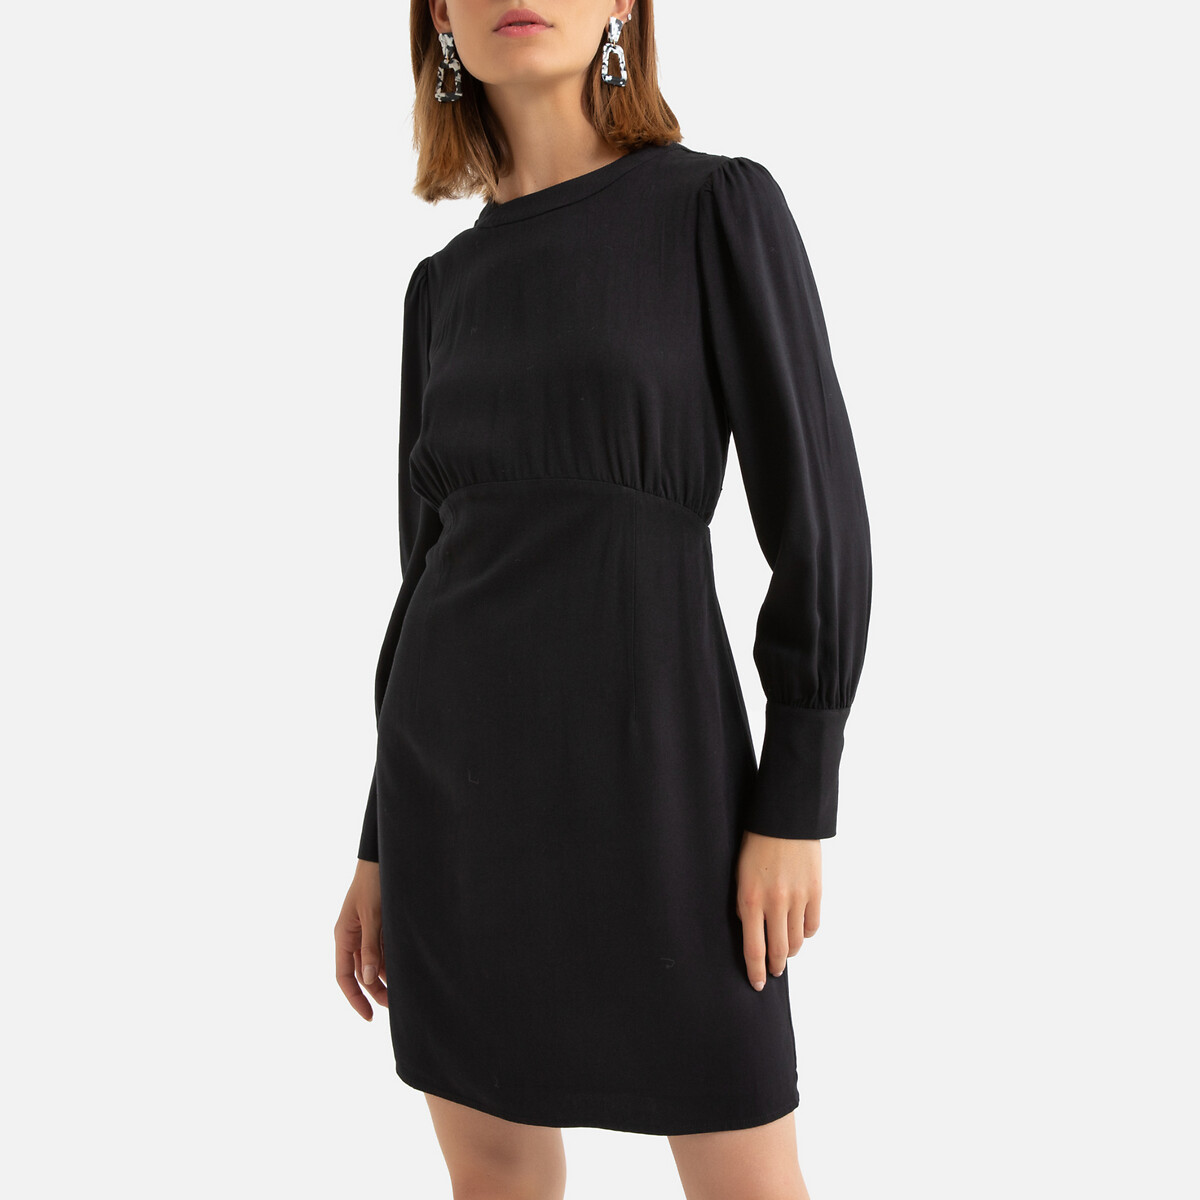 Платье La Redoute Короткое длинные рукава декольте сзади 0(XS) черный, размер 0(XS) Короткое длинные рукава декольте сзади 0(XS) черный - фото 1